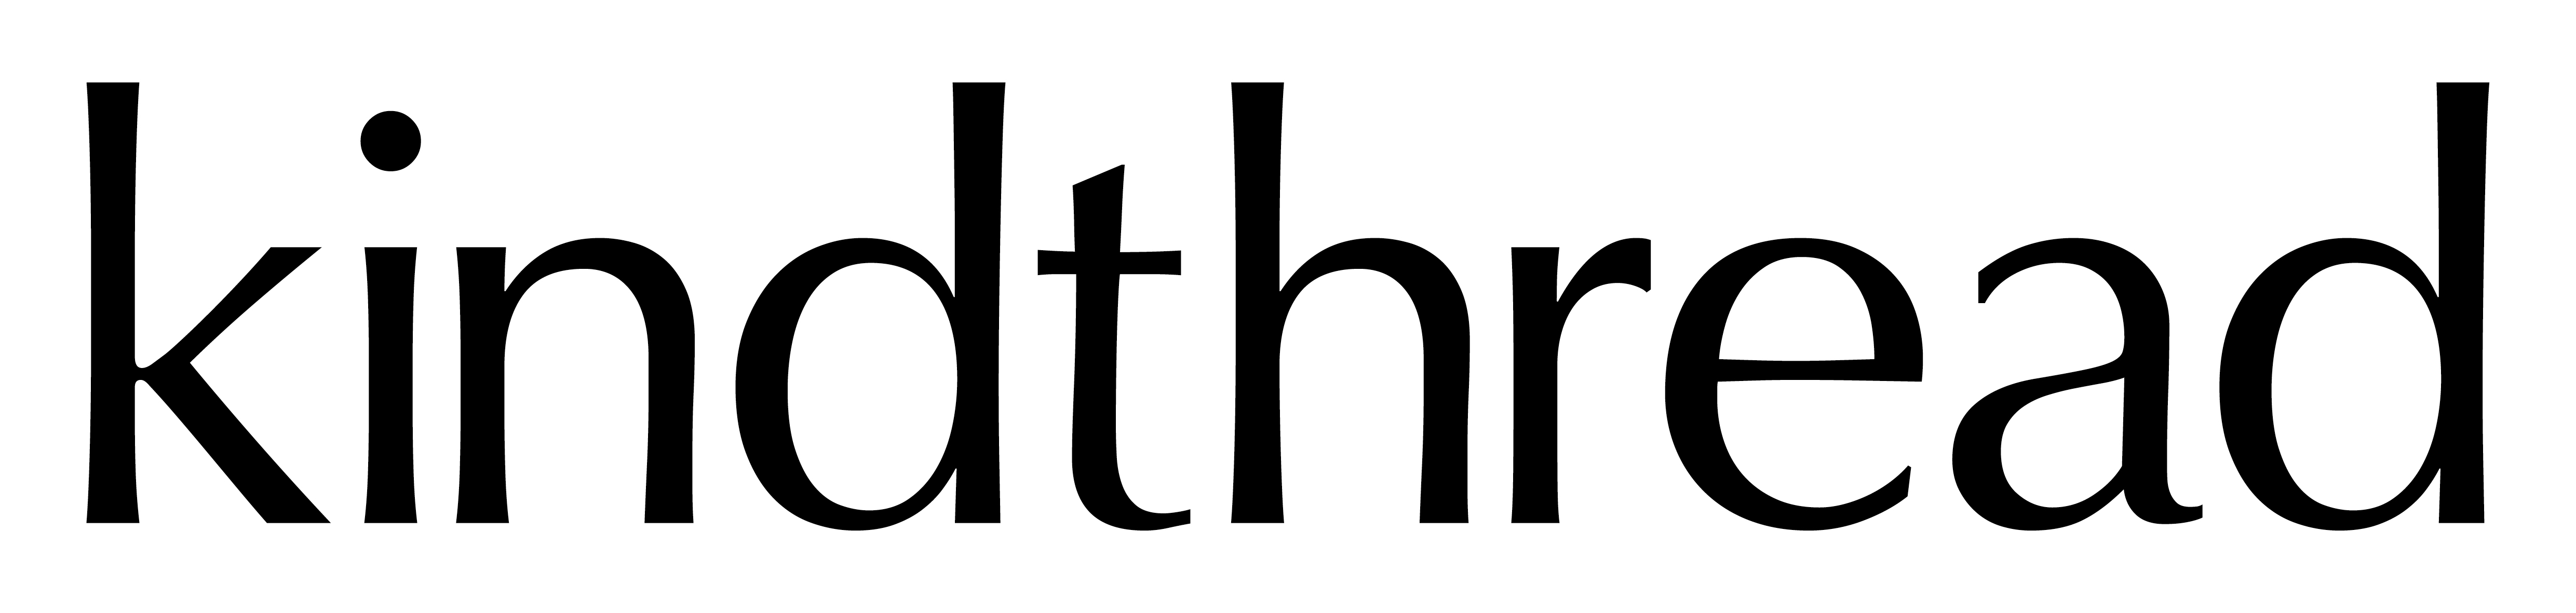 Kindthread logo.